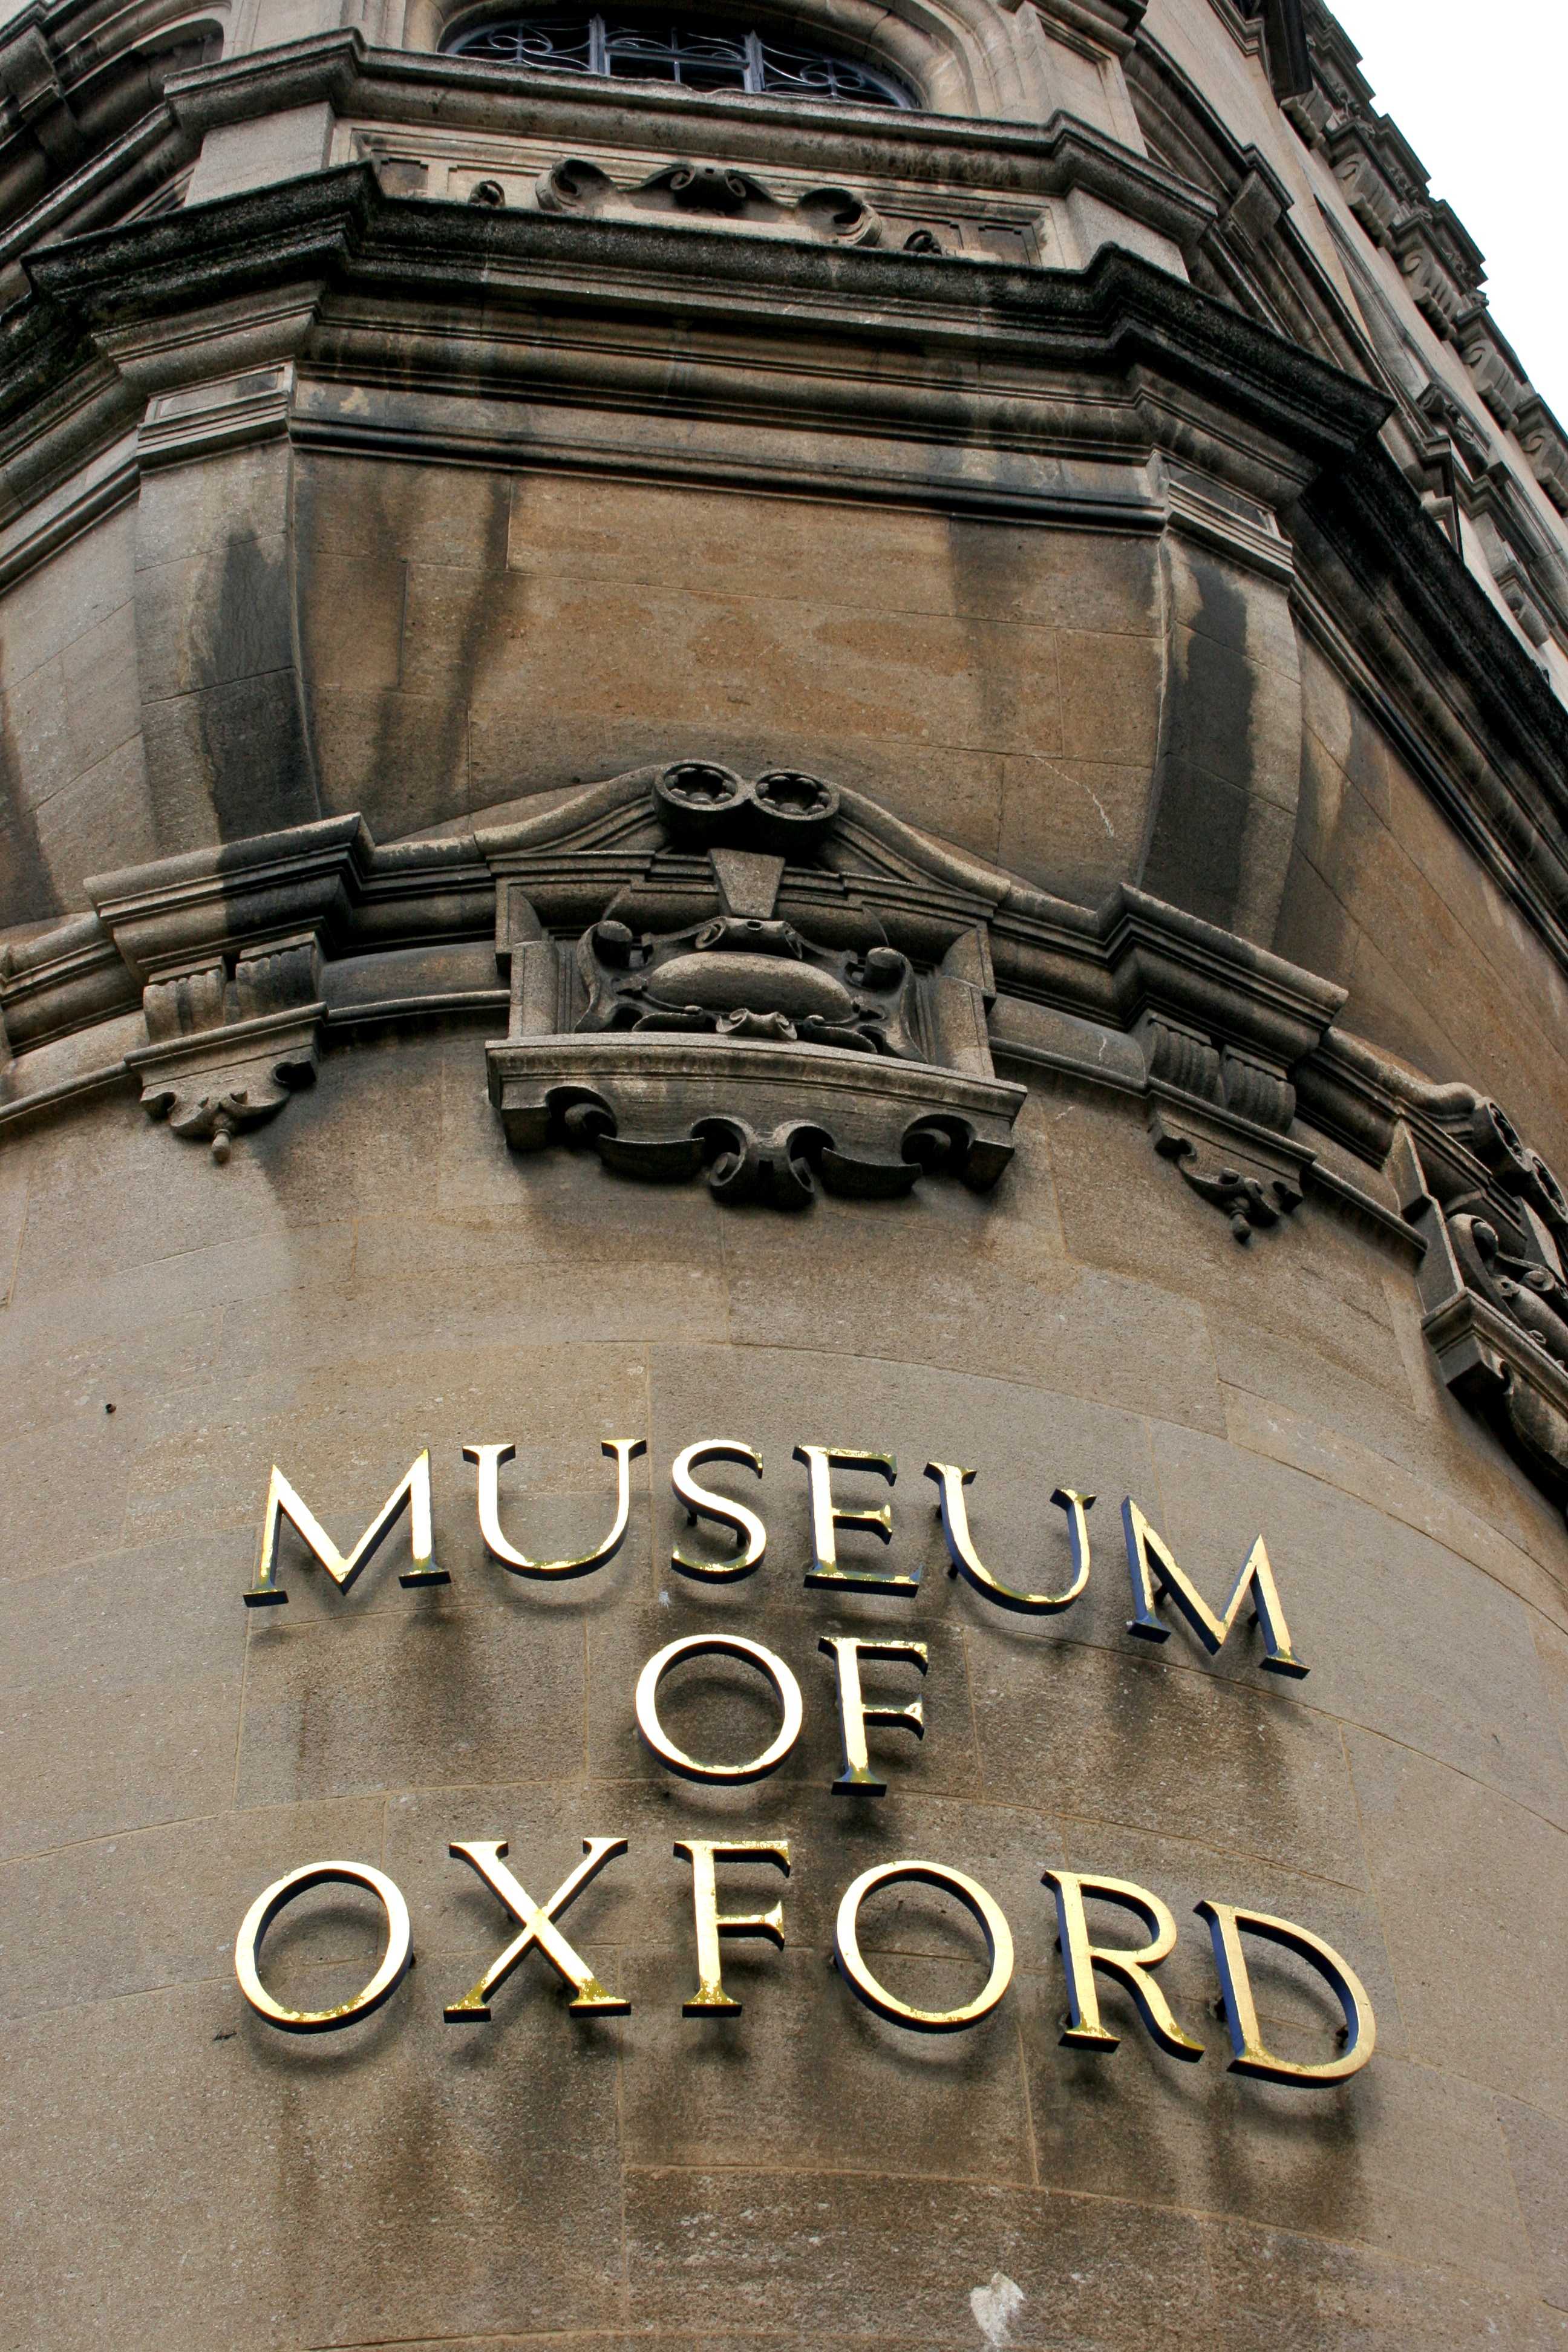 Oxford university metropolitan museum of art big. Музей Оксфордского университета. Оксфордский музей Оксфорд. Оксфордский музей истории науки. Музей искусств Оксфорд.